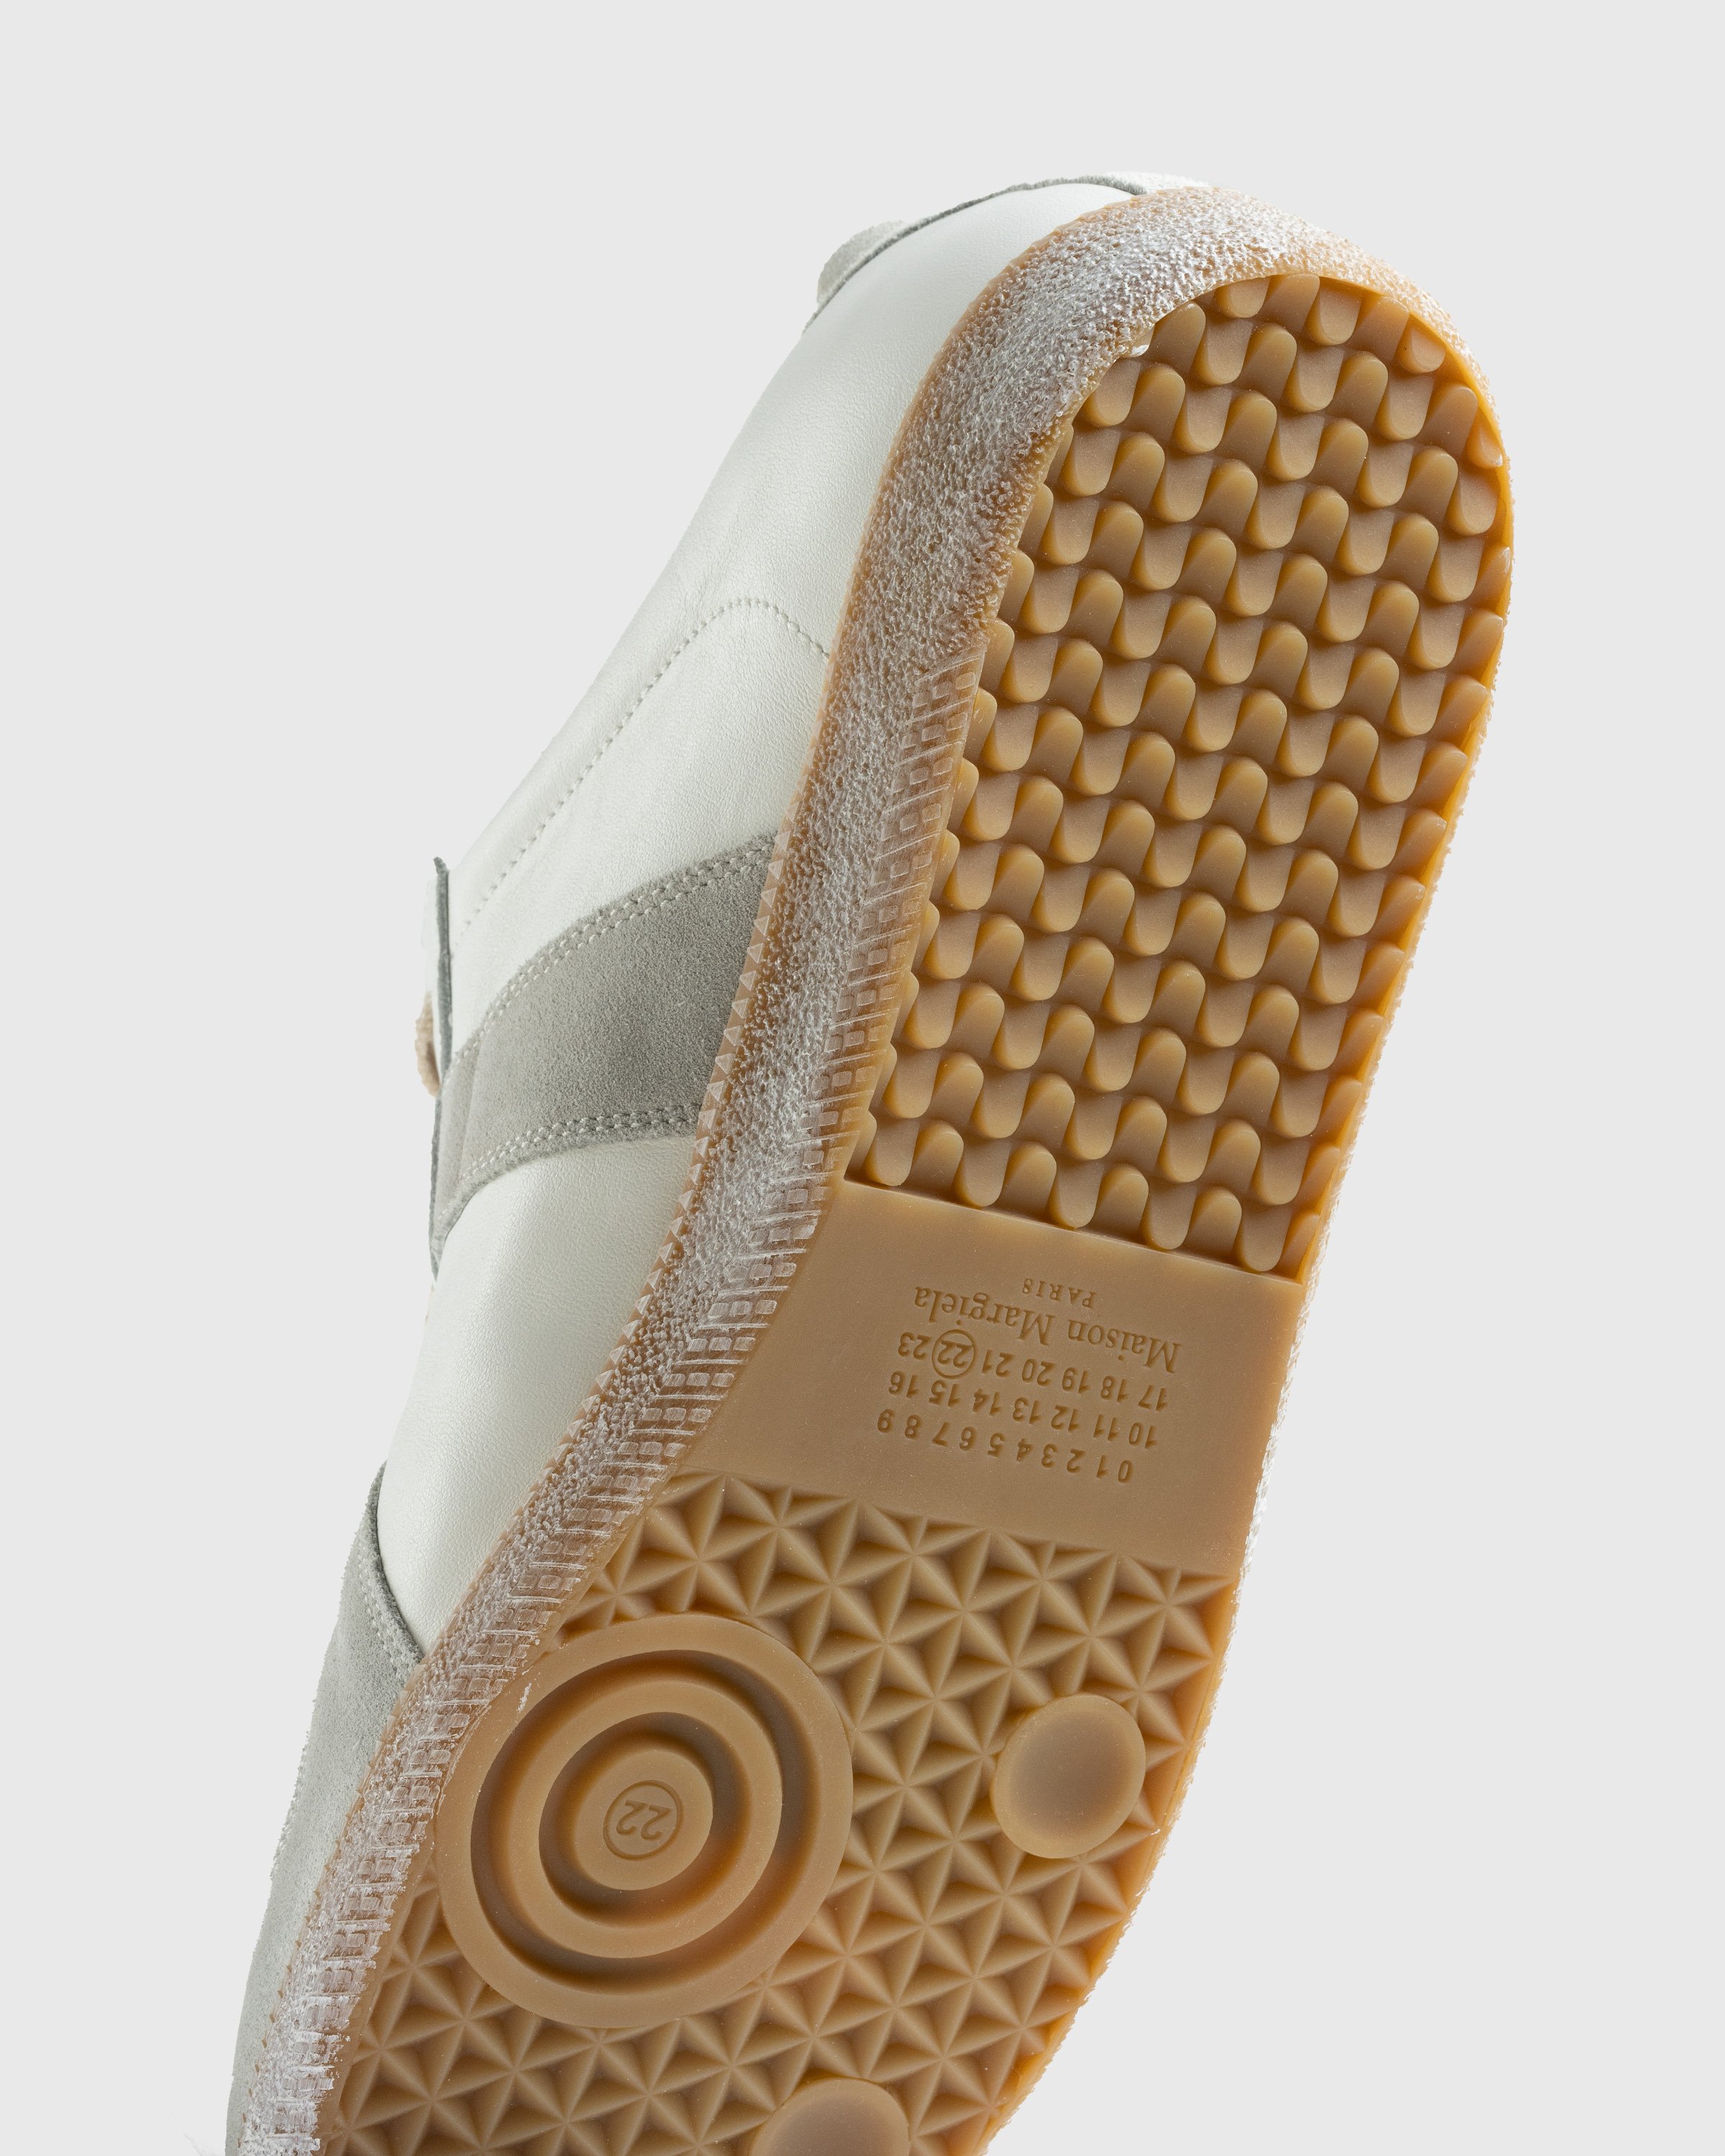 Maison Margiela - Replica Low Top All White - Footwear - Beige - Image 6